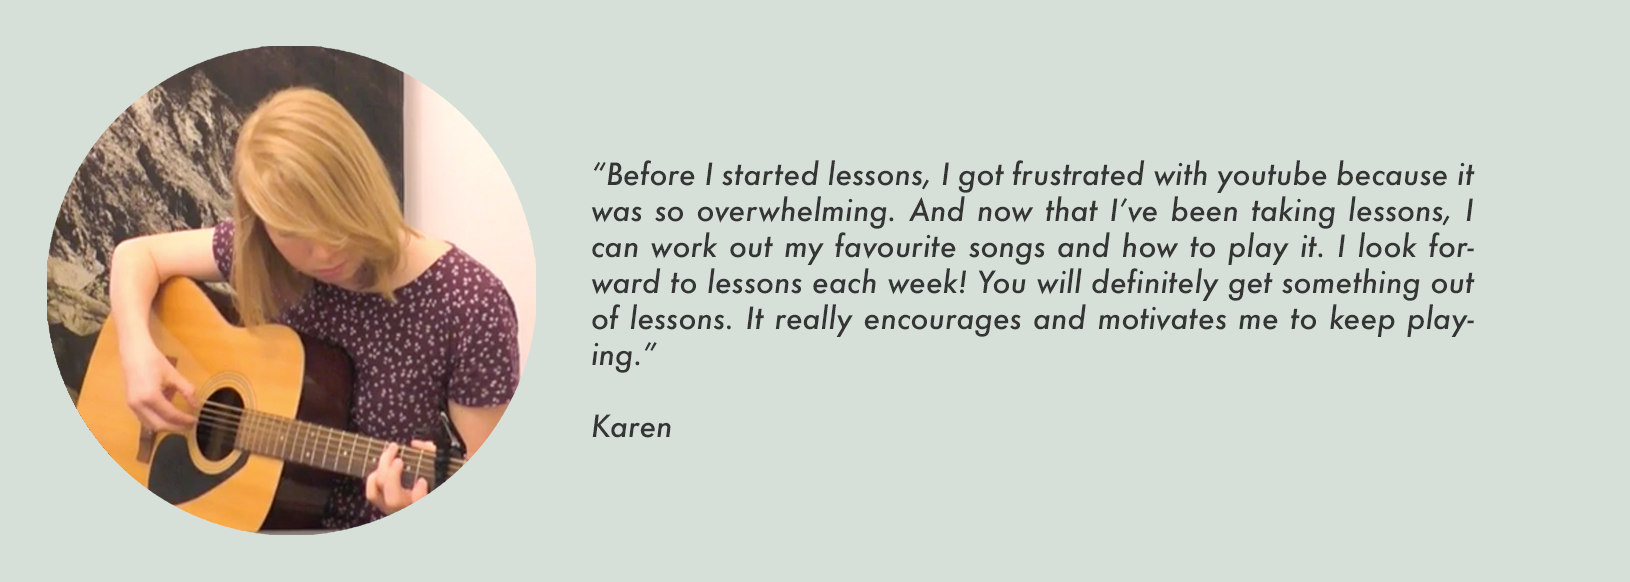 Karen Testimonial.png